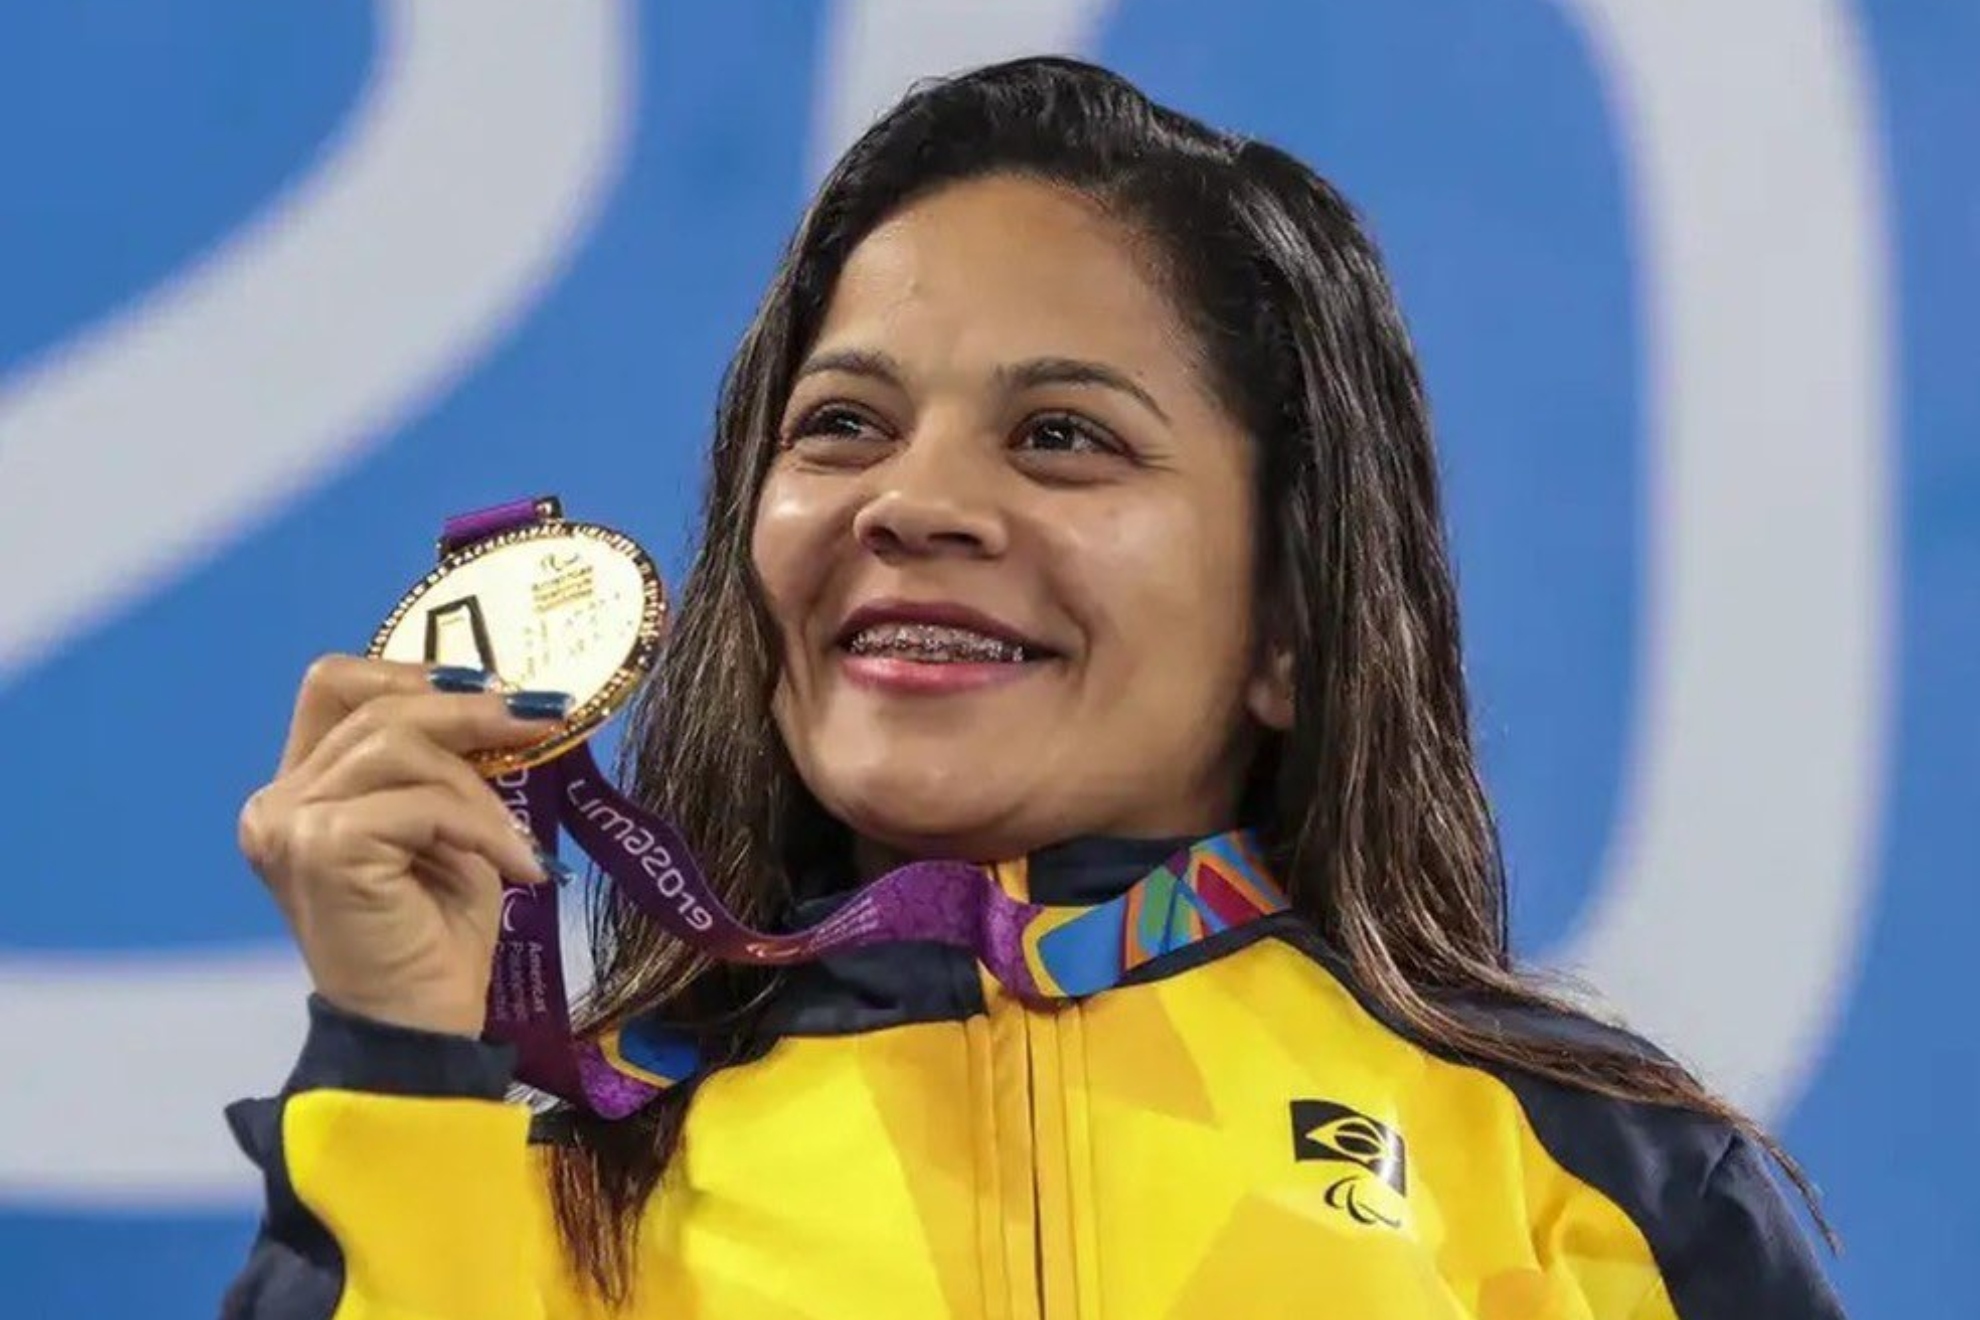 Joana Neves con una medalla en el podio de los Juegos Parapanamericanos de Lima 2019.